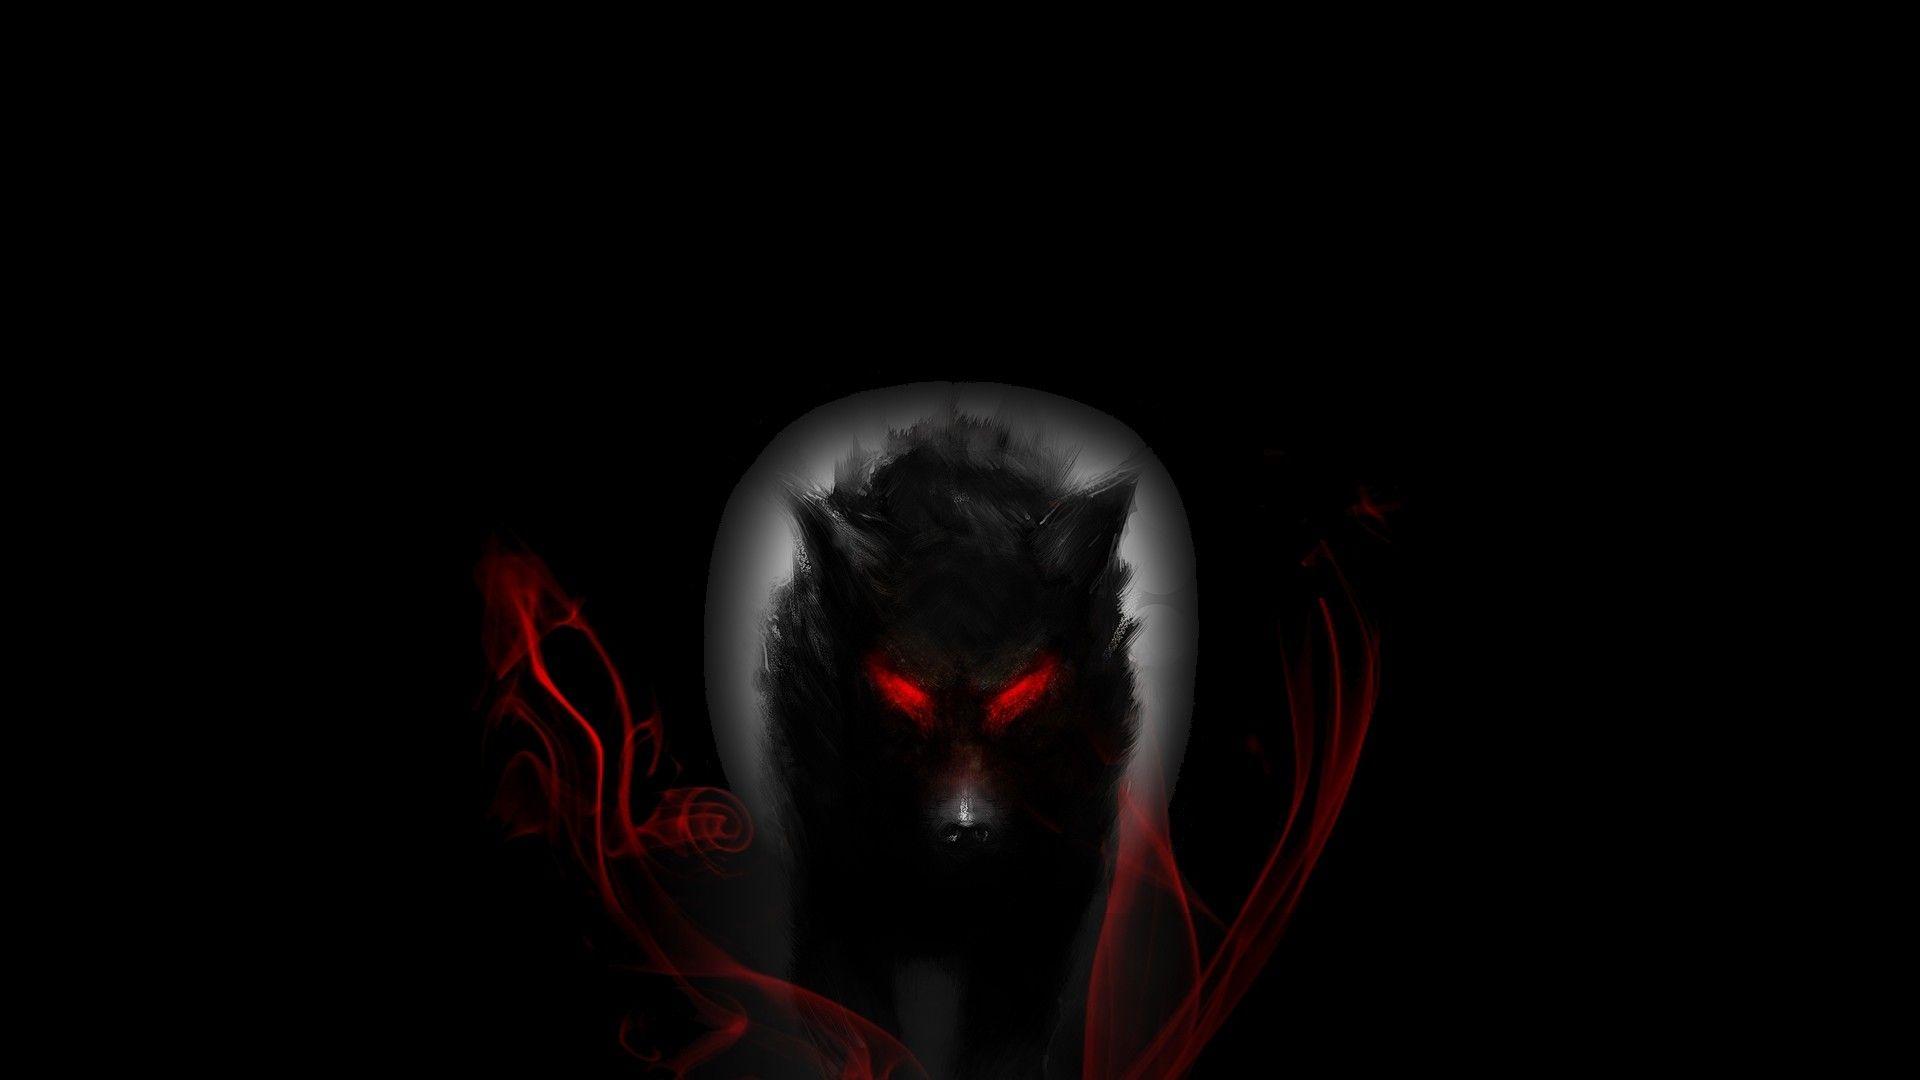 THE WOLFMAN dark werewolf wallpaper  1920x1080  103003  WallpaperUP